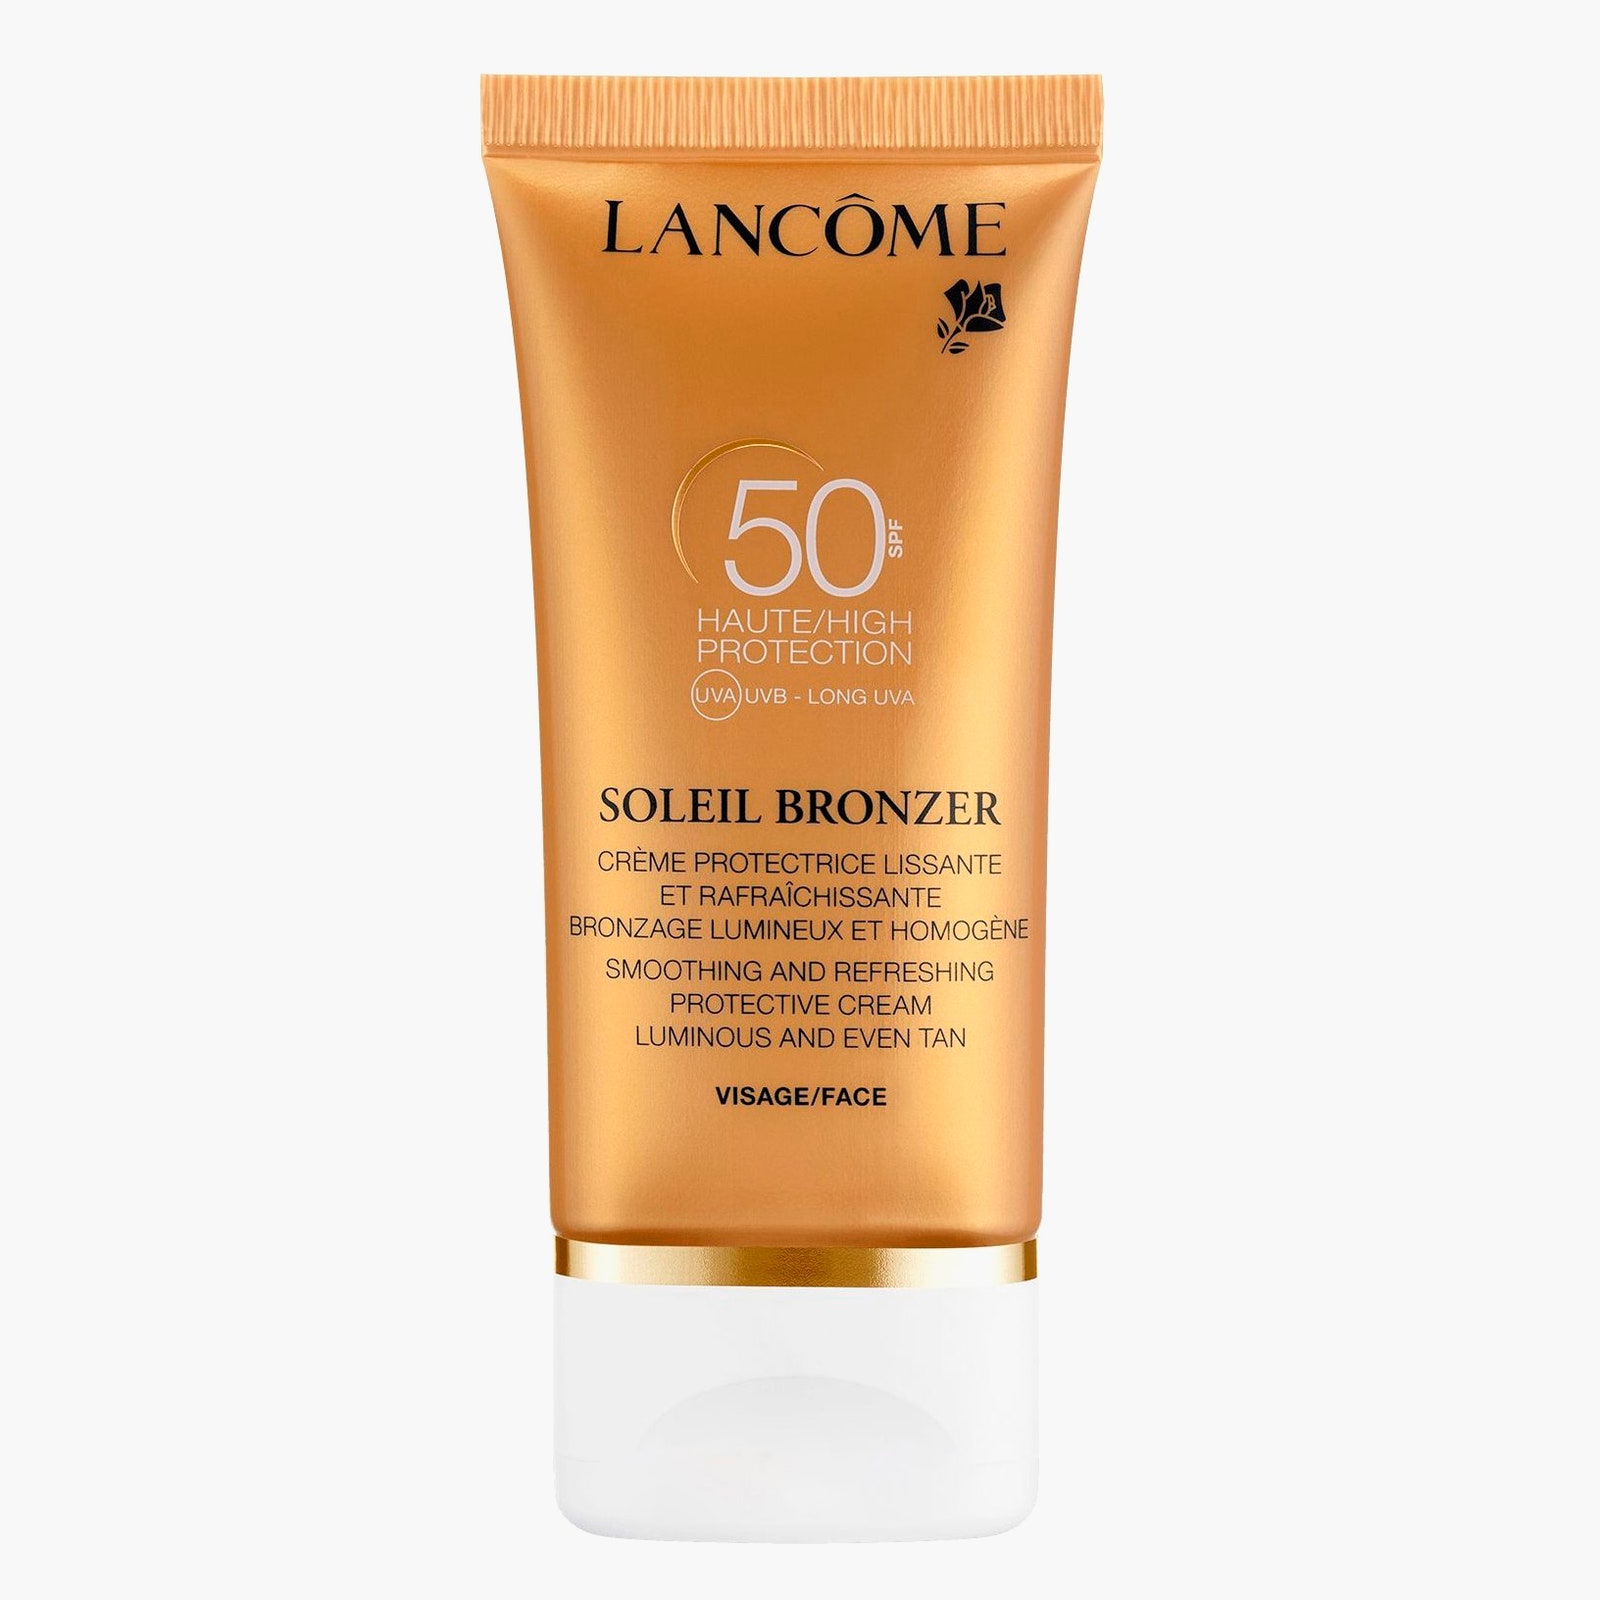 Солнцезащитный крем для лица с SPF 50 Soleil Bronzer Lancôme 2650 рублей